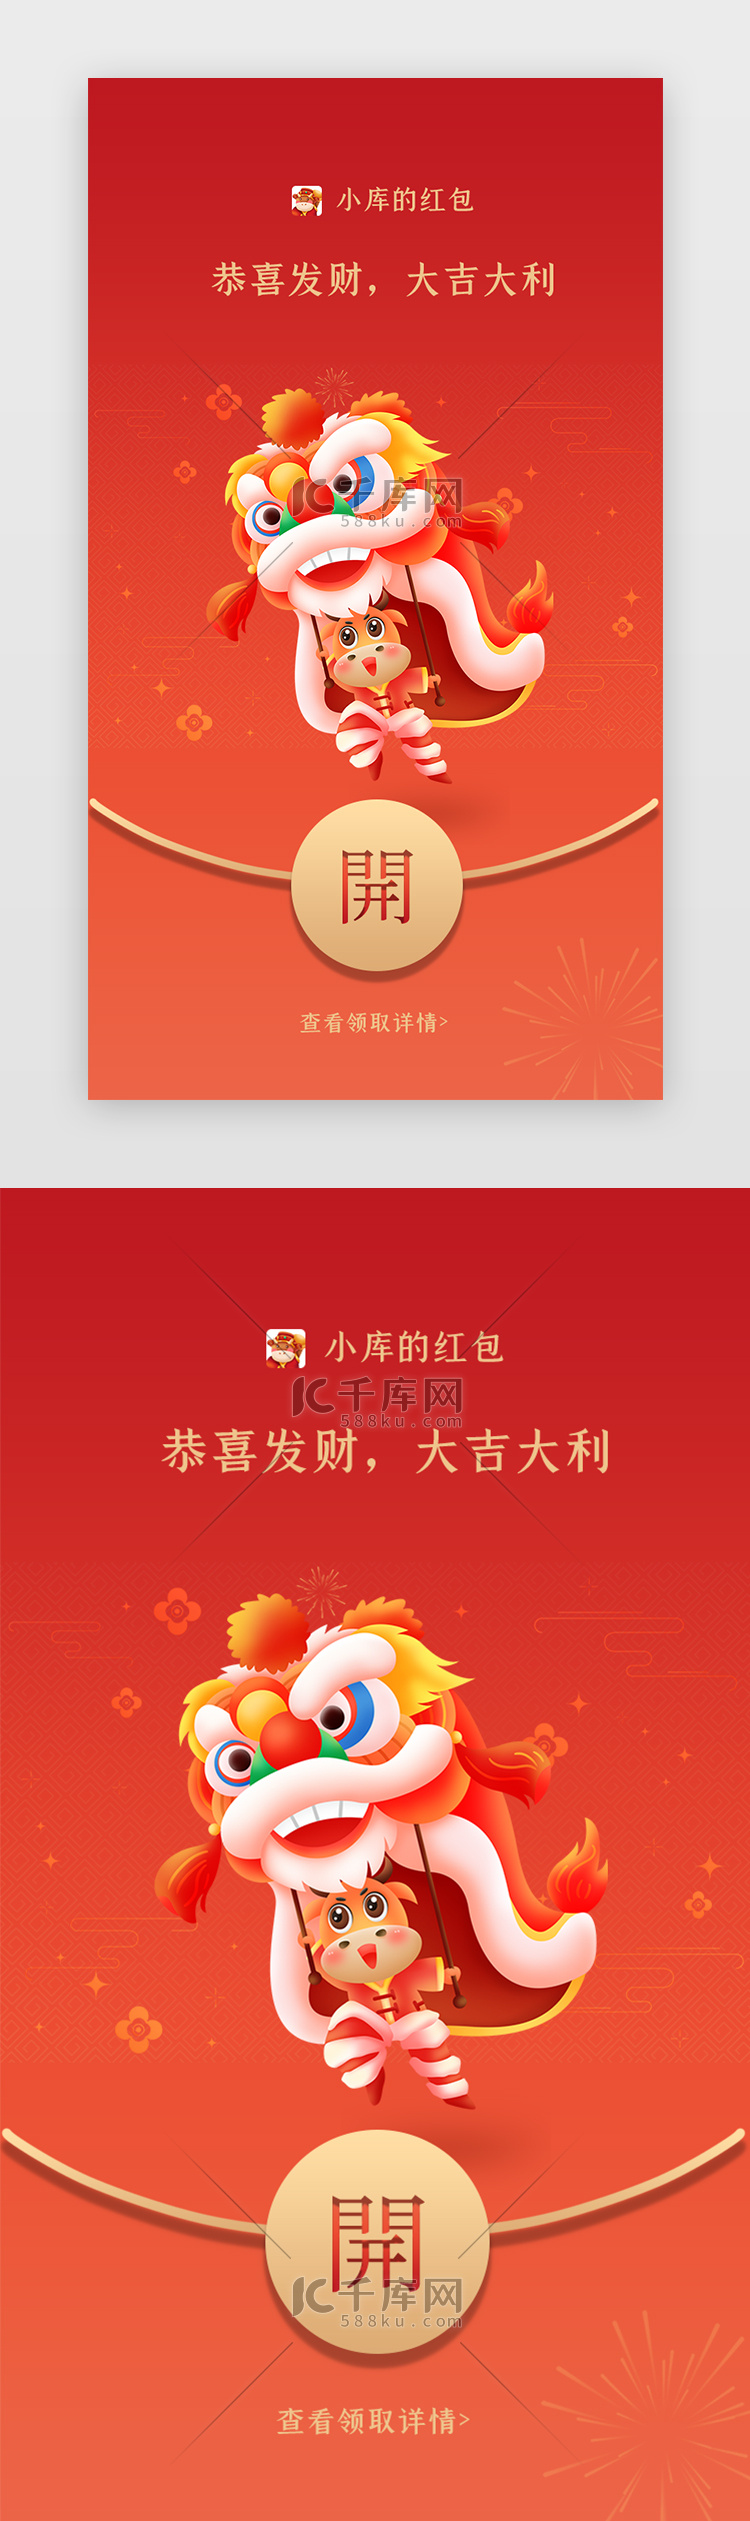 红色喜庆牛年舞狮新年快乐企业微信红包封面